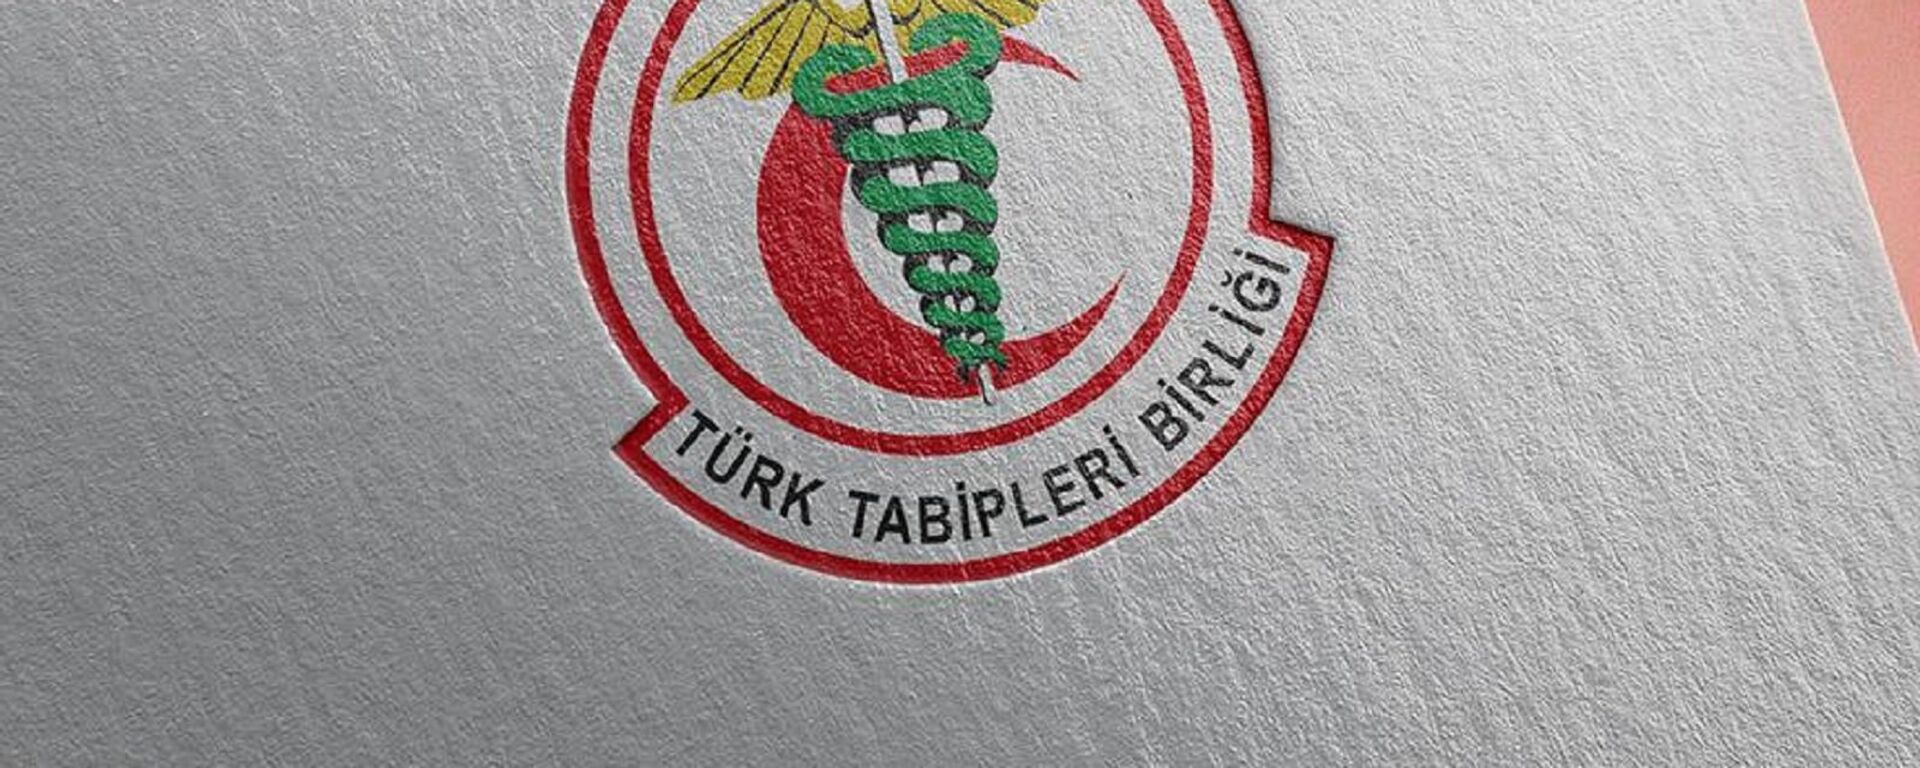 Türk Tabipler Birliği (TTB) - Sputnik Türkiye, 1920, 29.09.2021